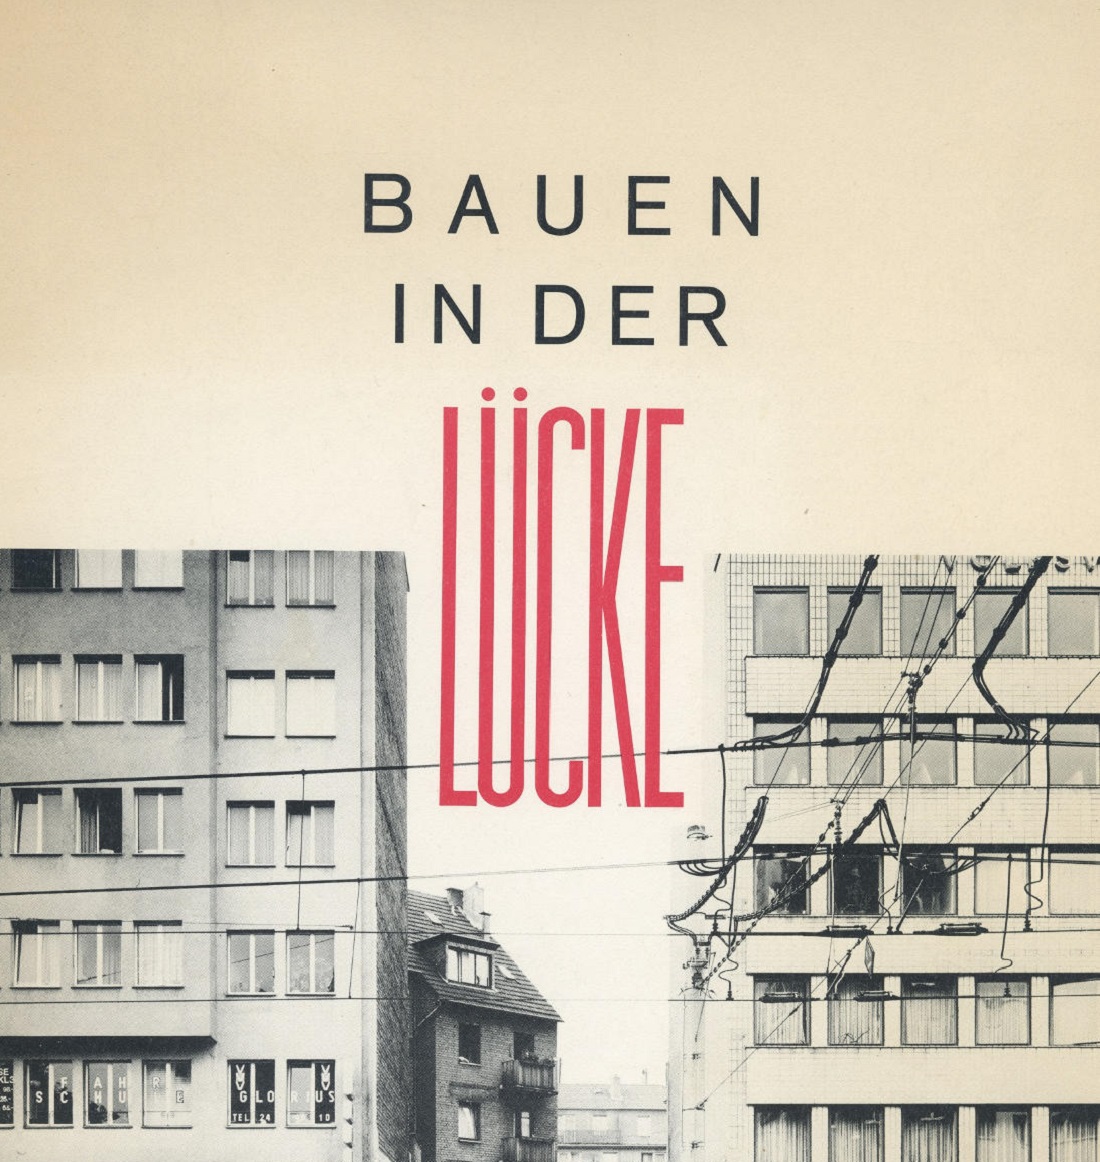 Titelblatt der Kölner BDA-Publikation "Bauen in der Lücke" von 1984 (Bild: Cover)